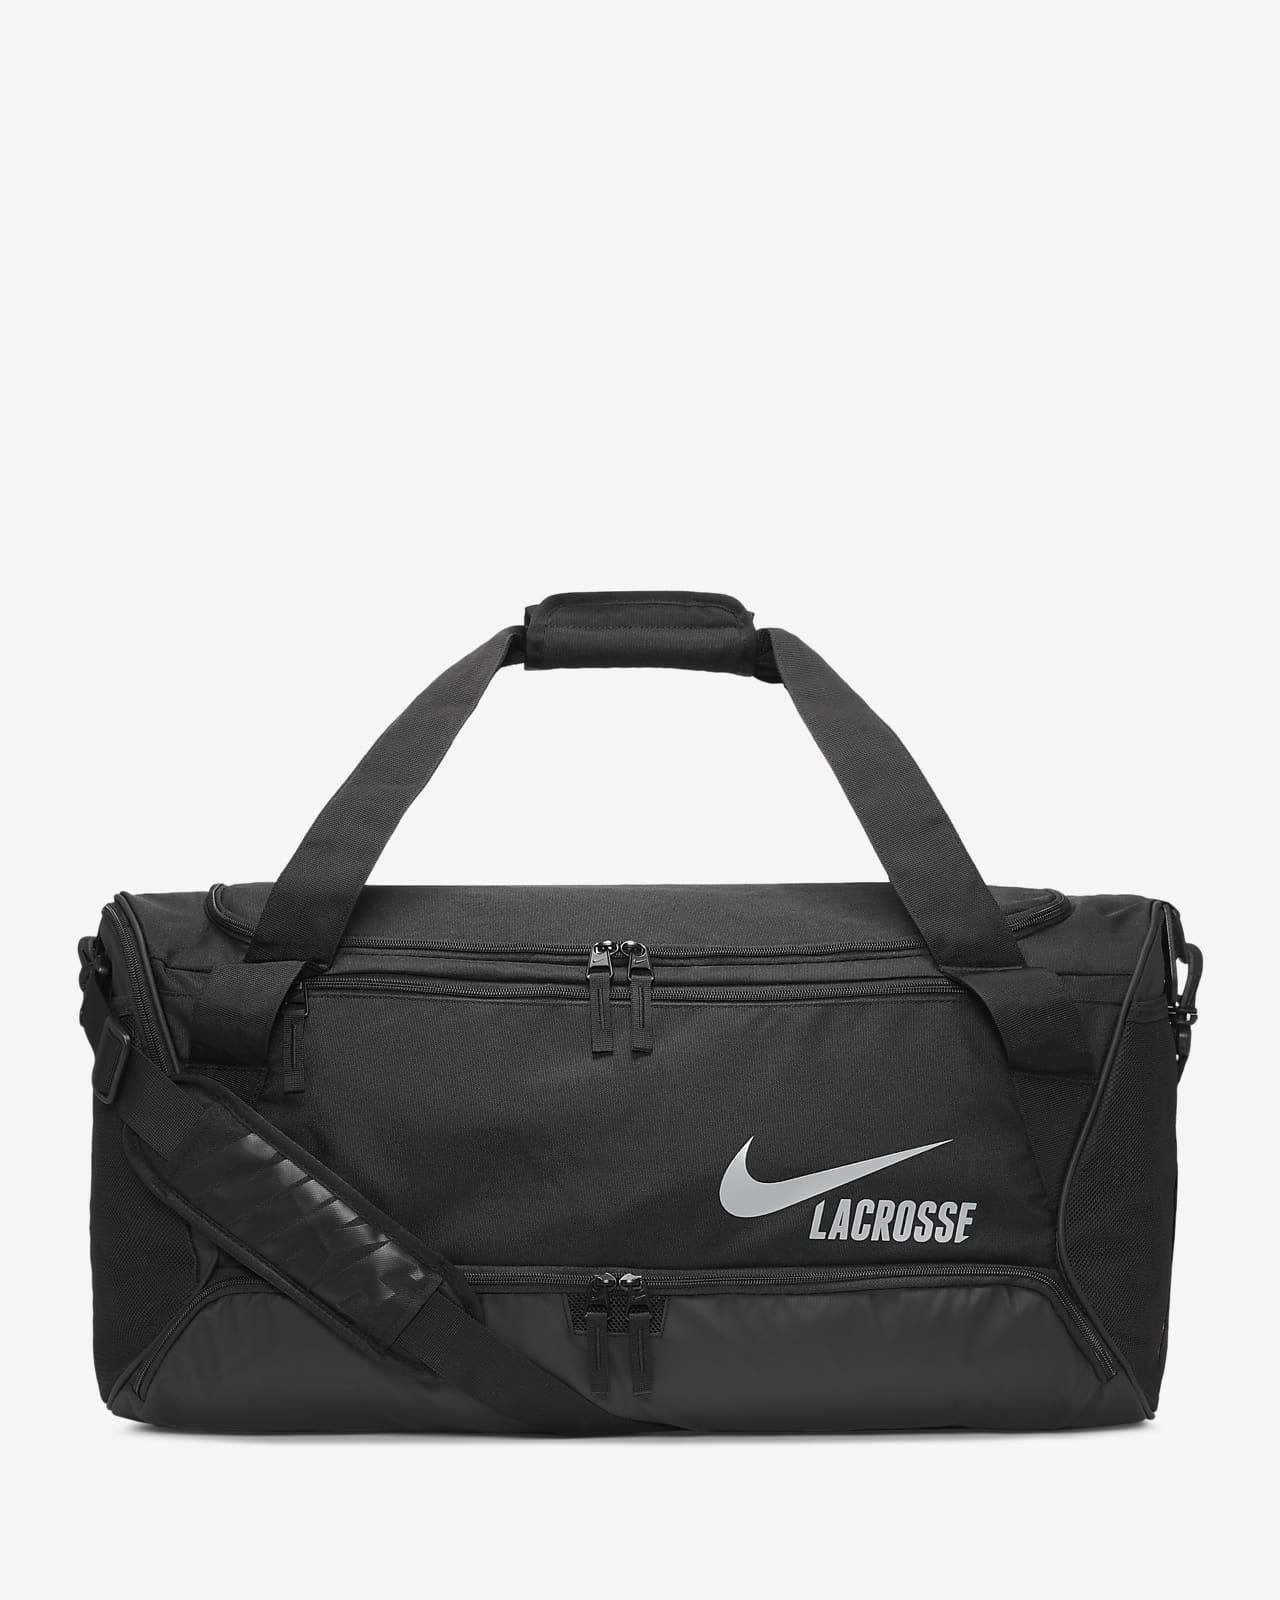 Nike Dodge Lacrosse Duffel Bag (Large)